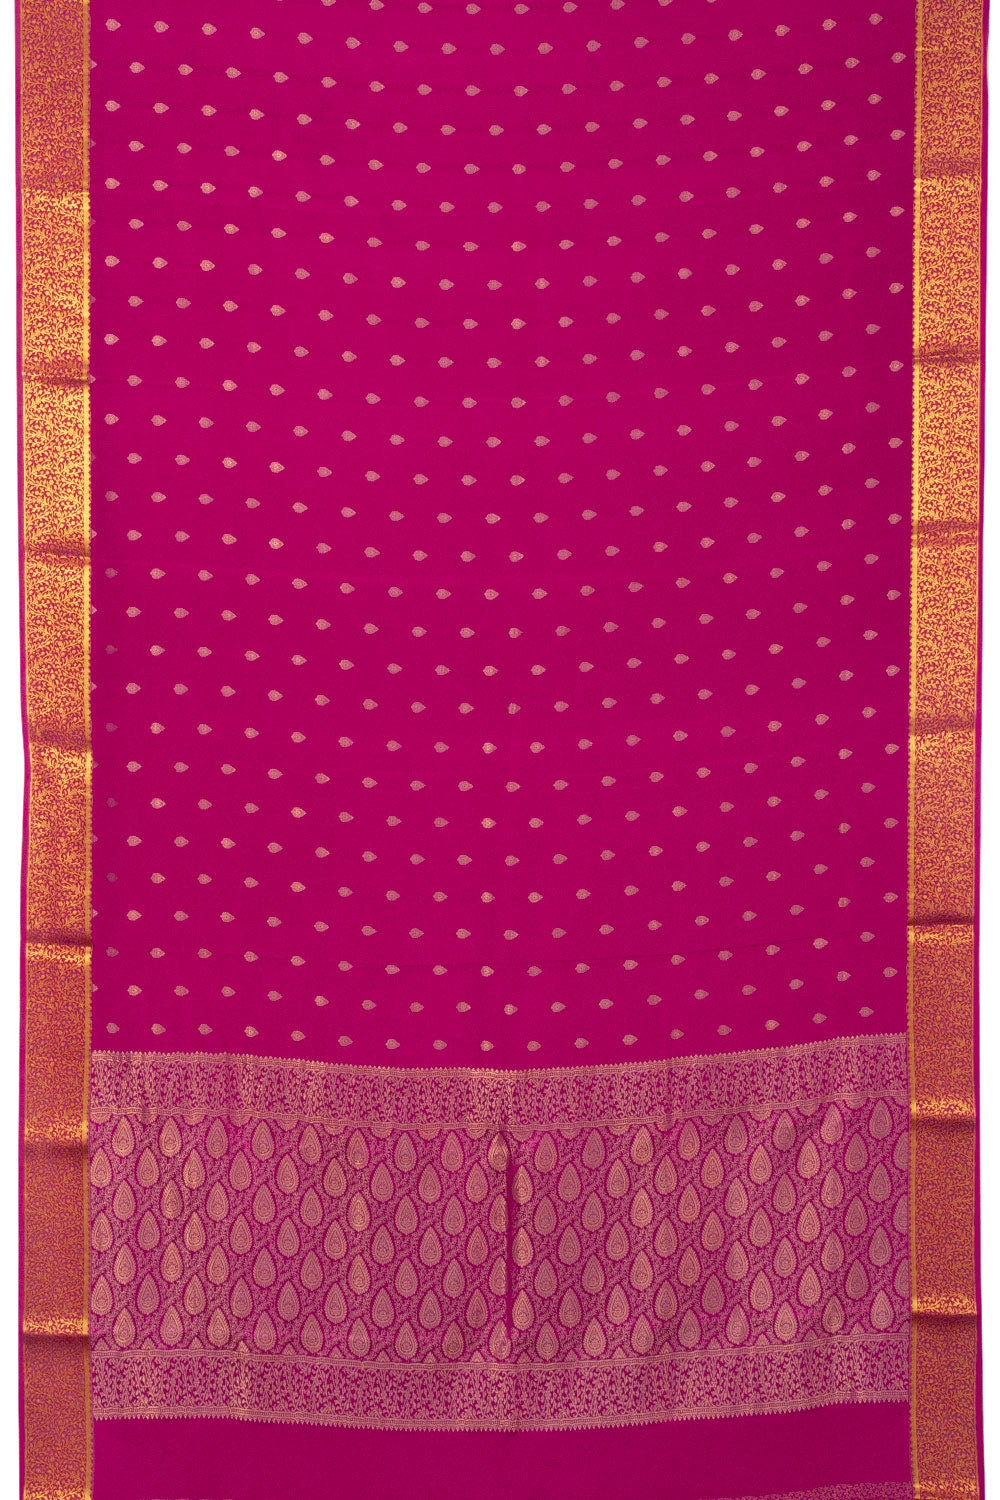 Rani Pink Mysore Crepe Silk Saree - Avishya